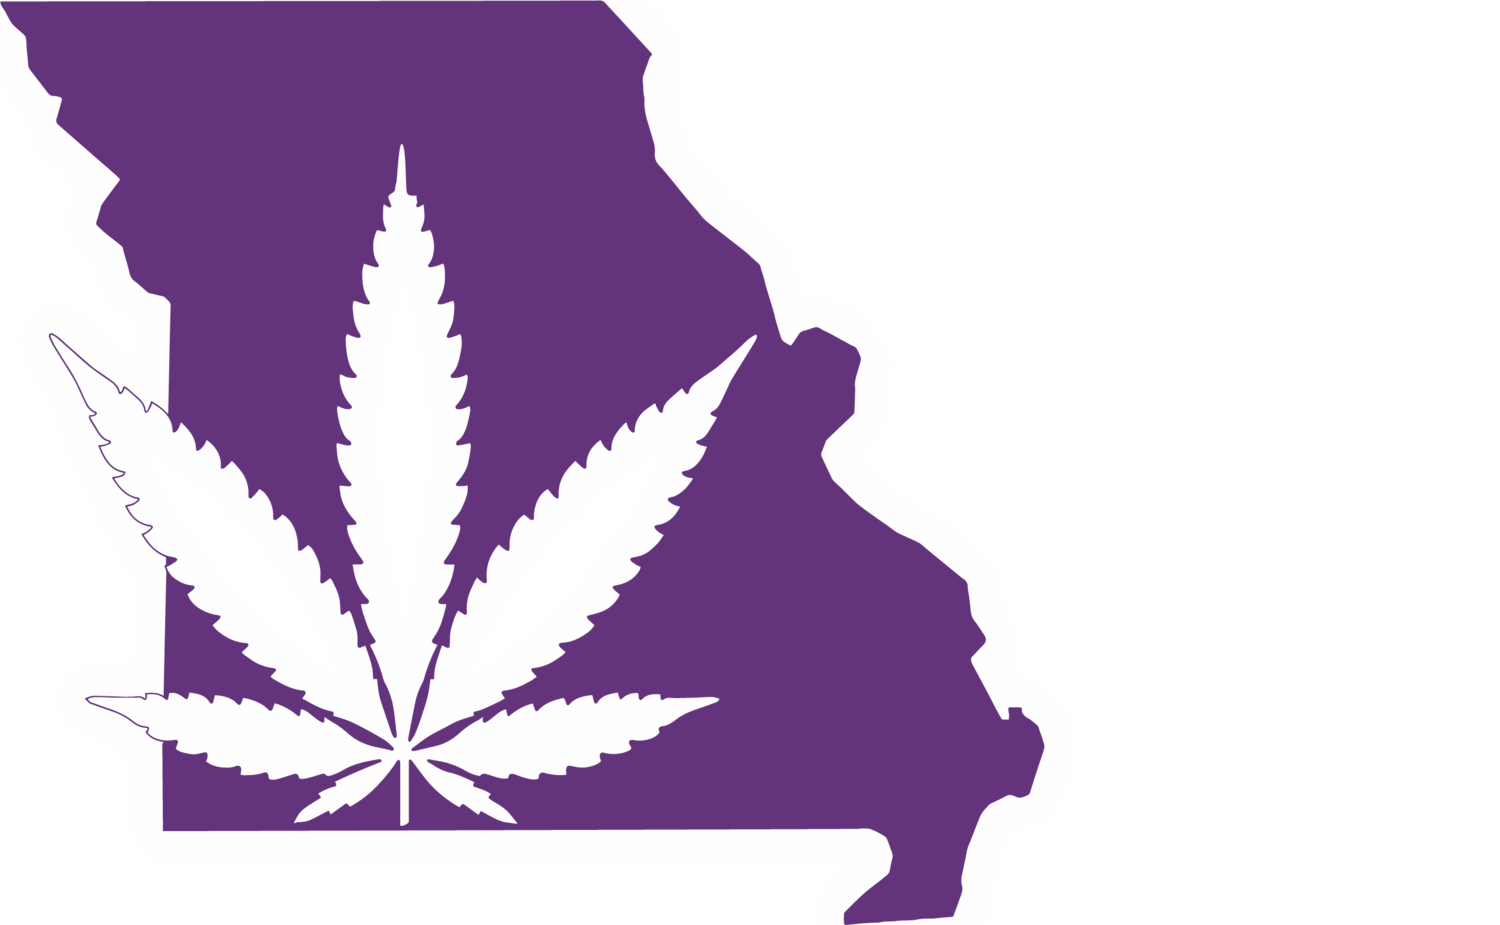 Missouri Cannabis Clinic